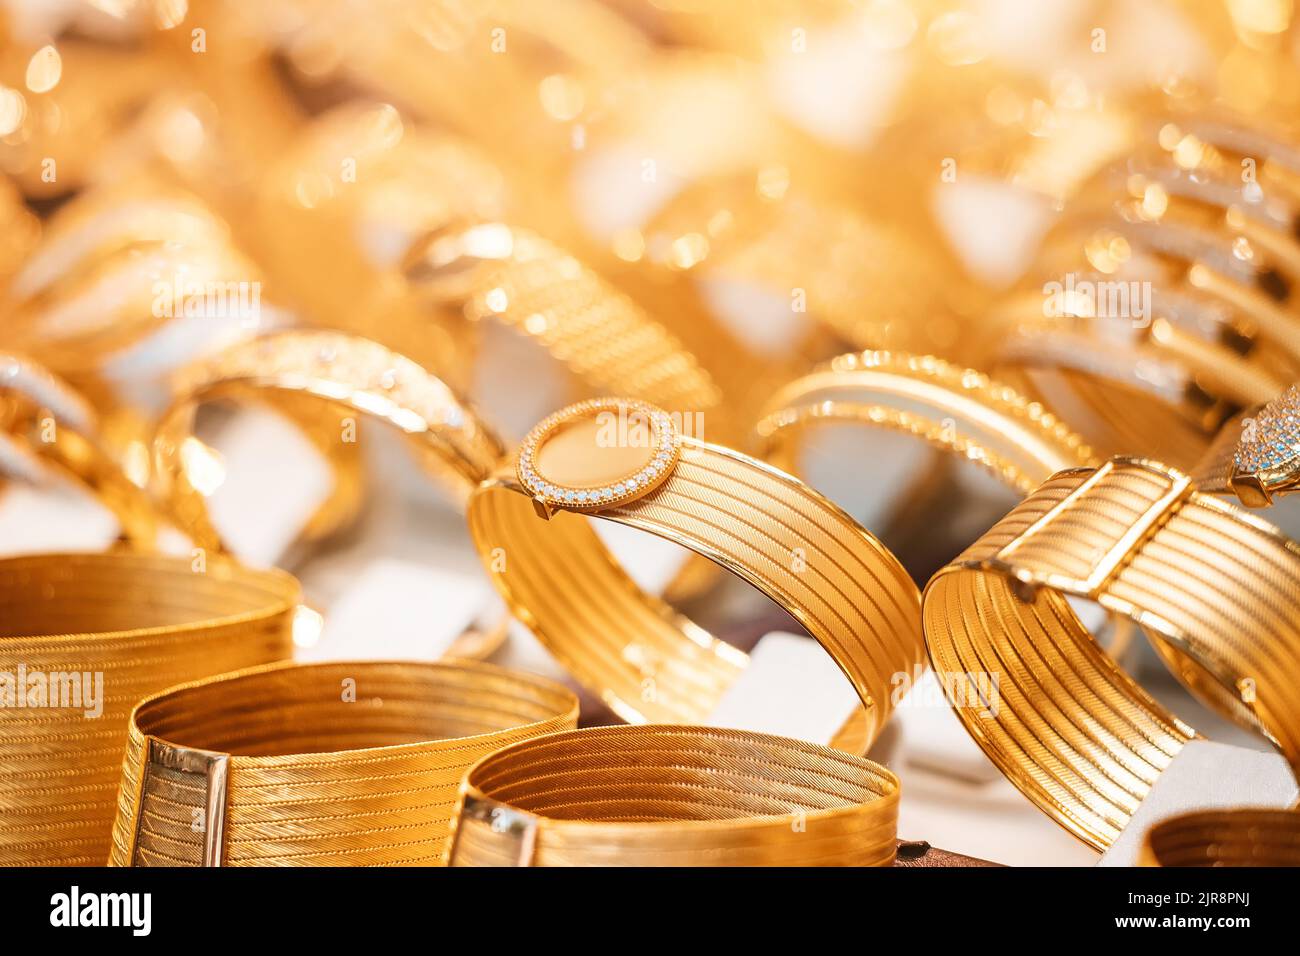 Un magasin de bijoux vitrine avec des bijoux dorés, des bracelets et des accessoires. Le concept des investissements et de l'épargne avec l'or. Banque D'Images